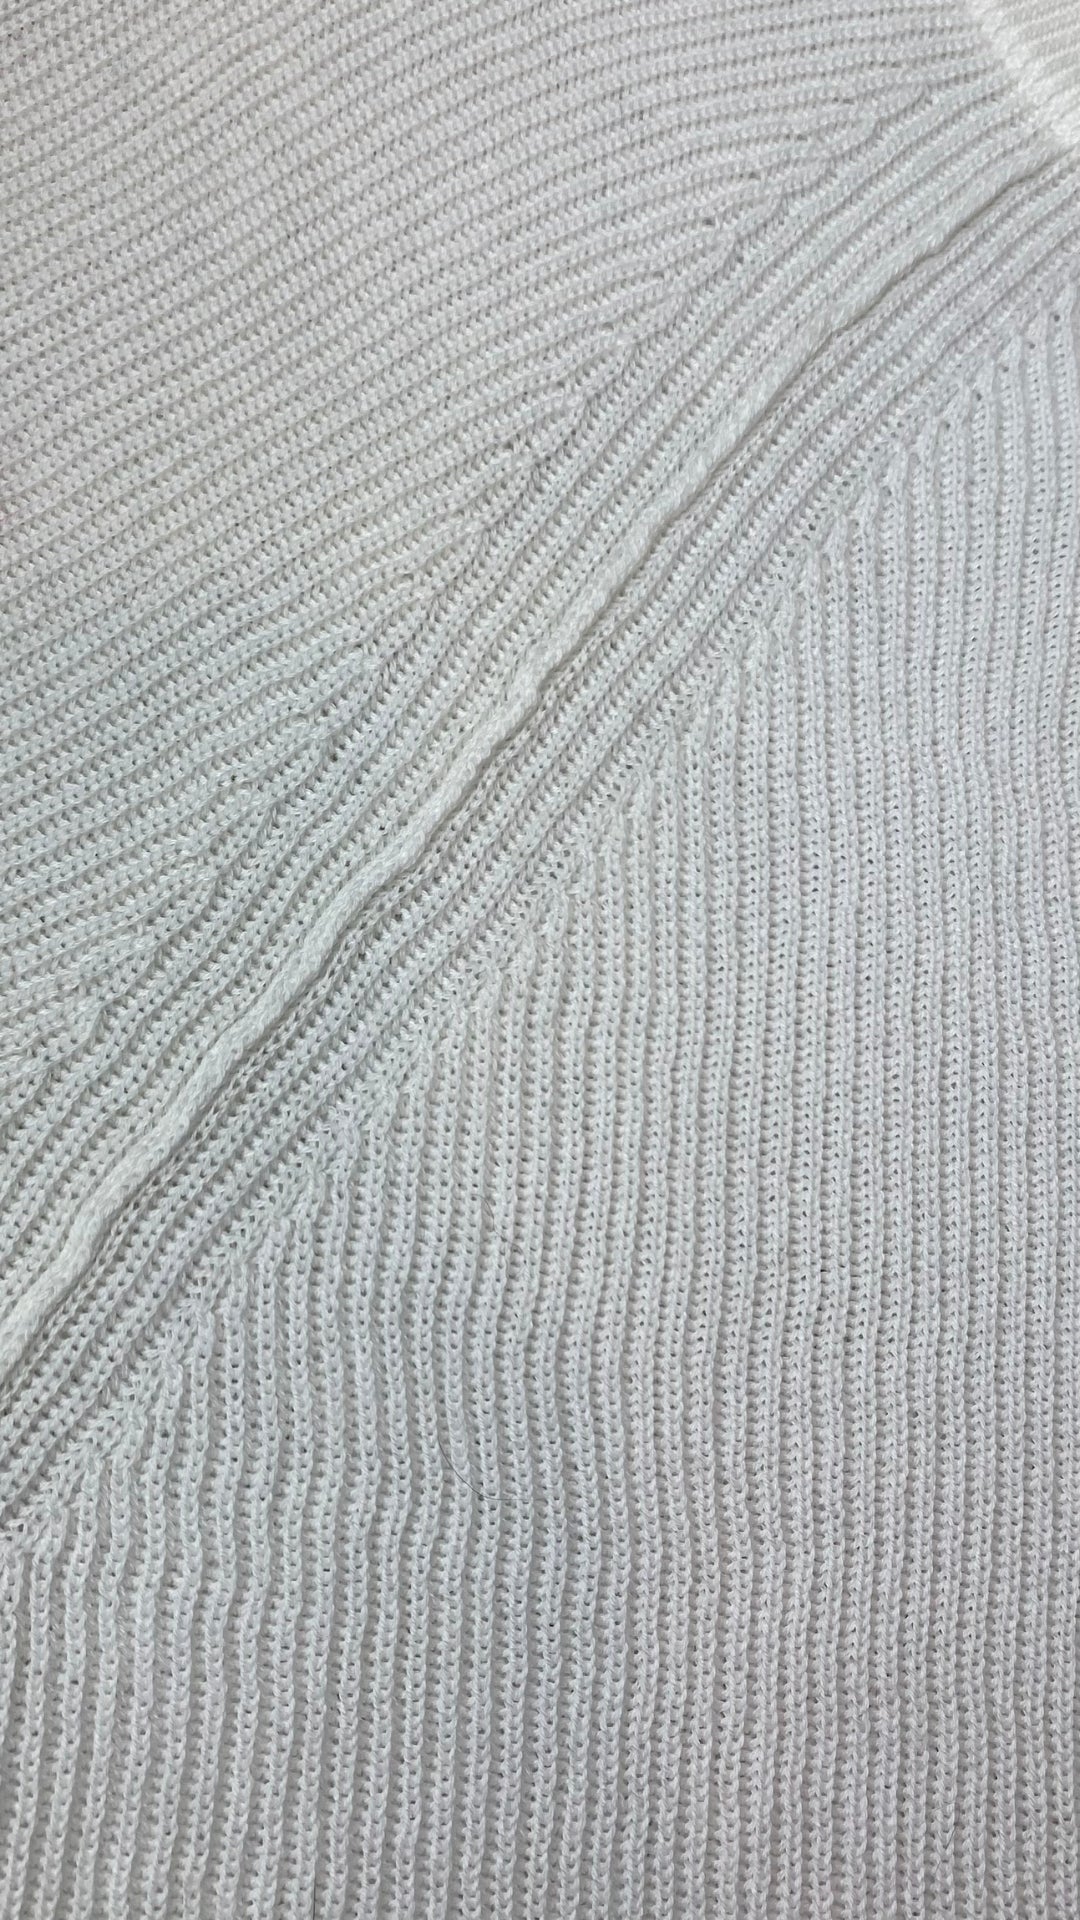 Chandail manche raglan en tricot de coton Matinique, taille xl. Vue de près du tricot.